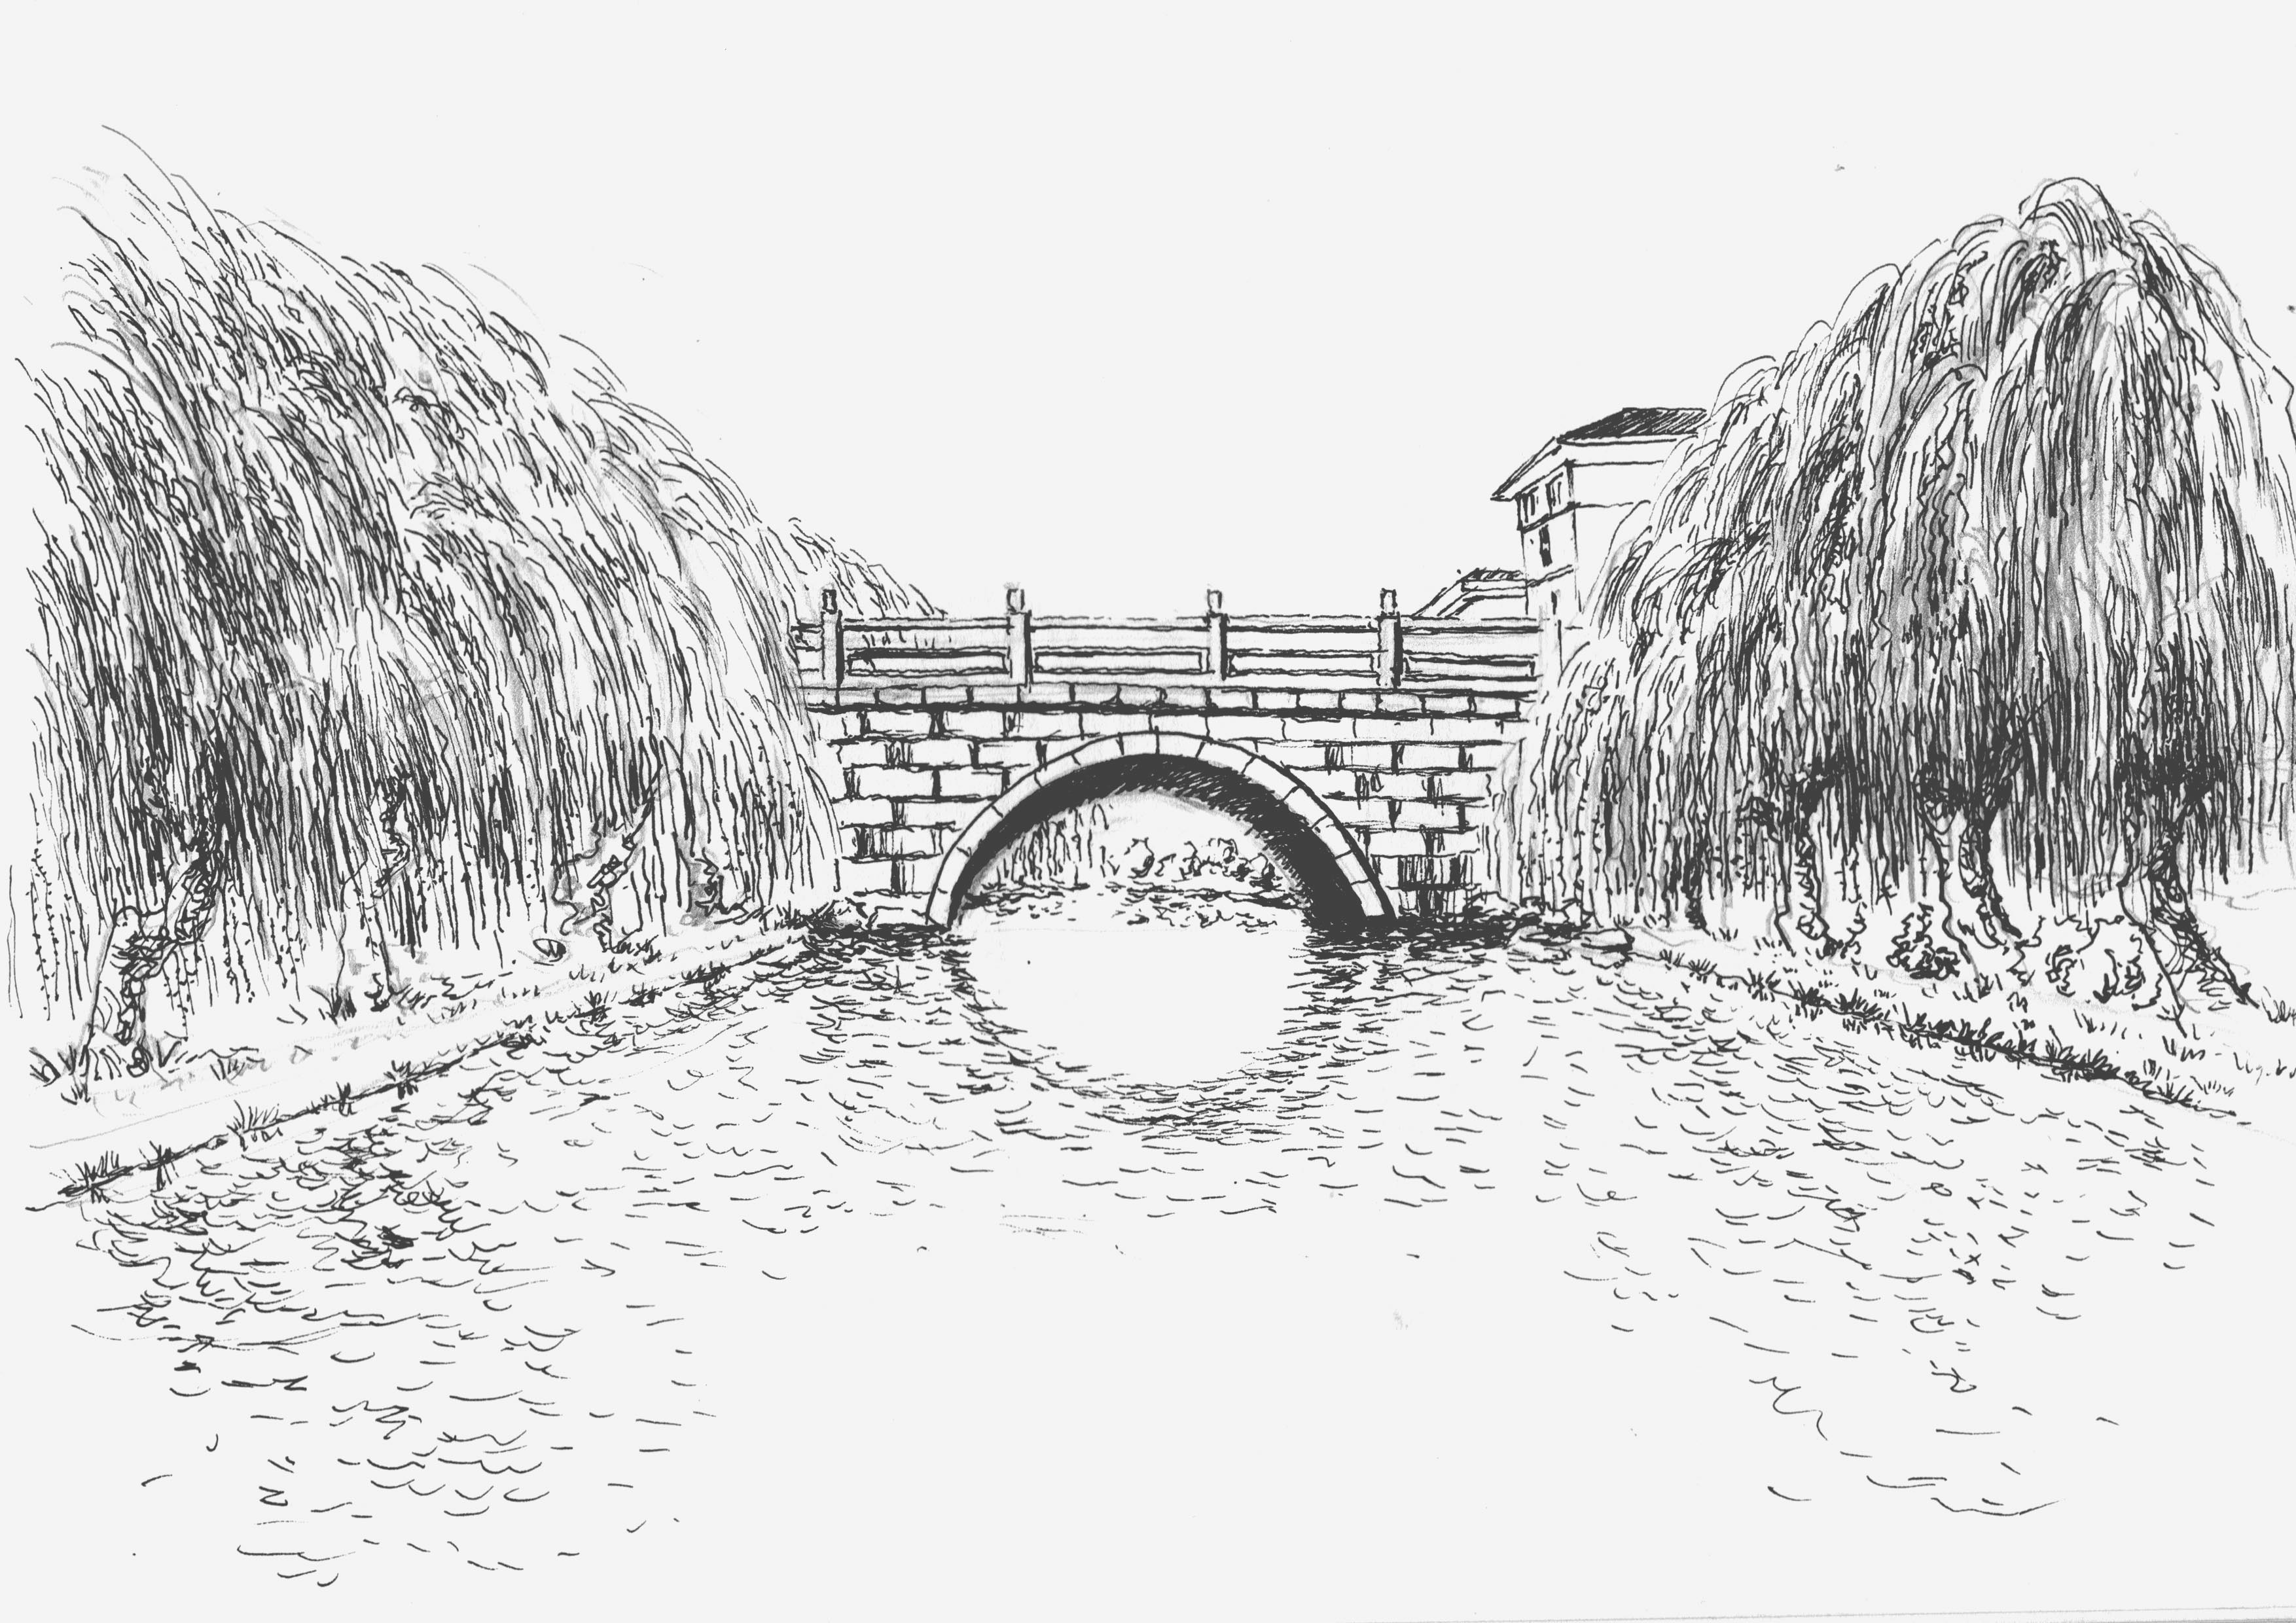 春风和煦,小桥流水,柳岸花溪,别是一贩珑景